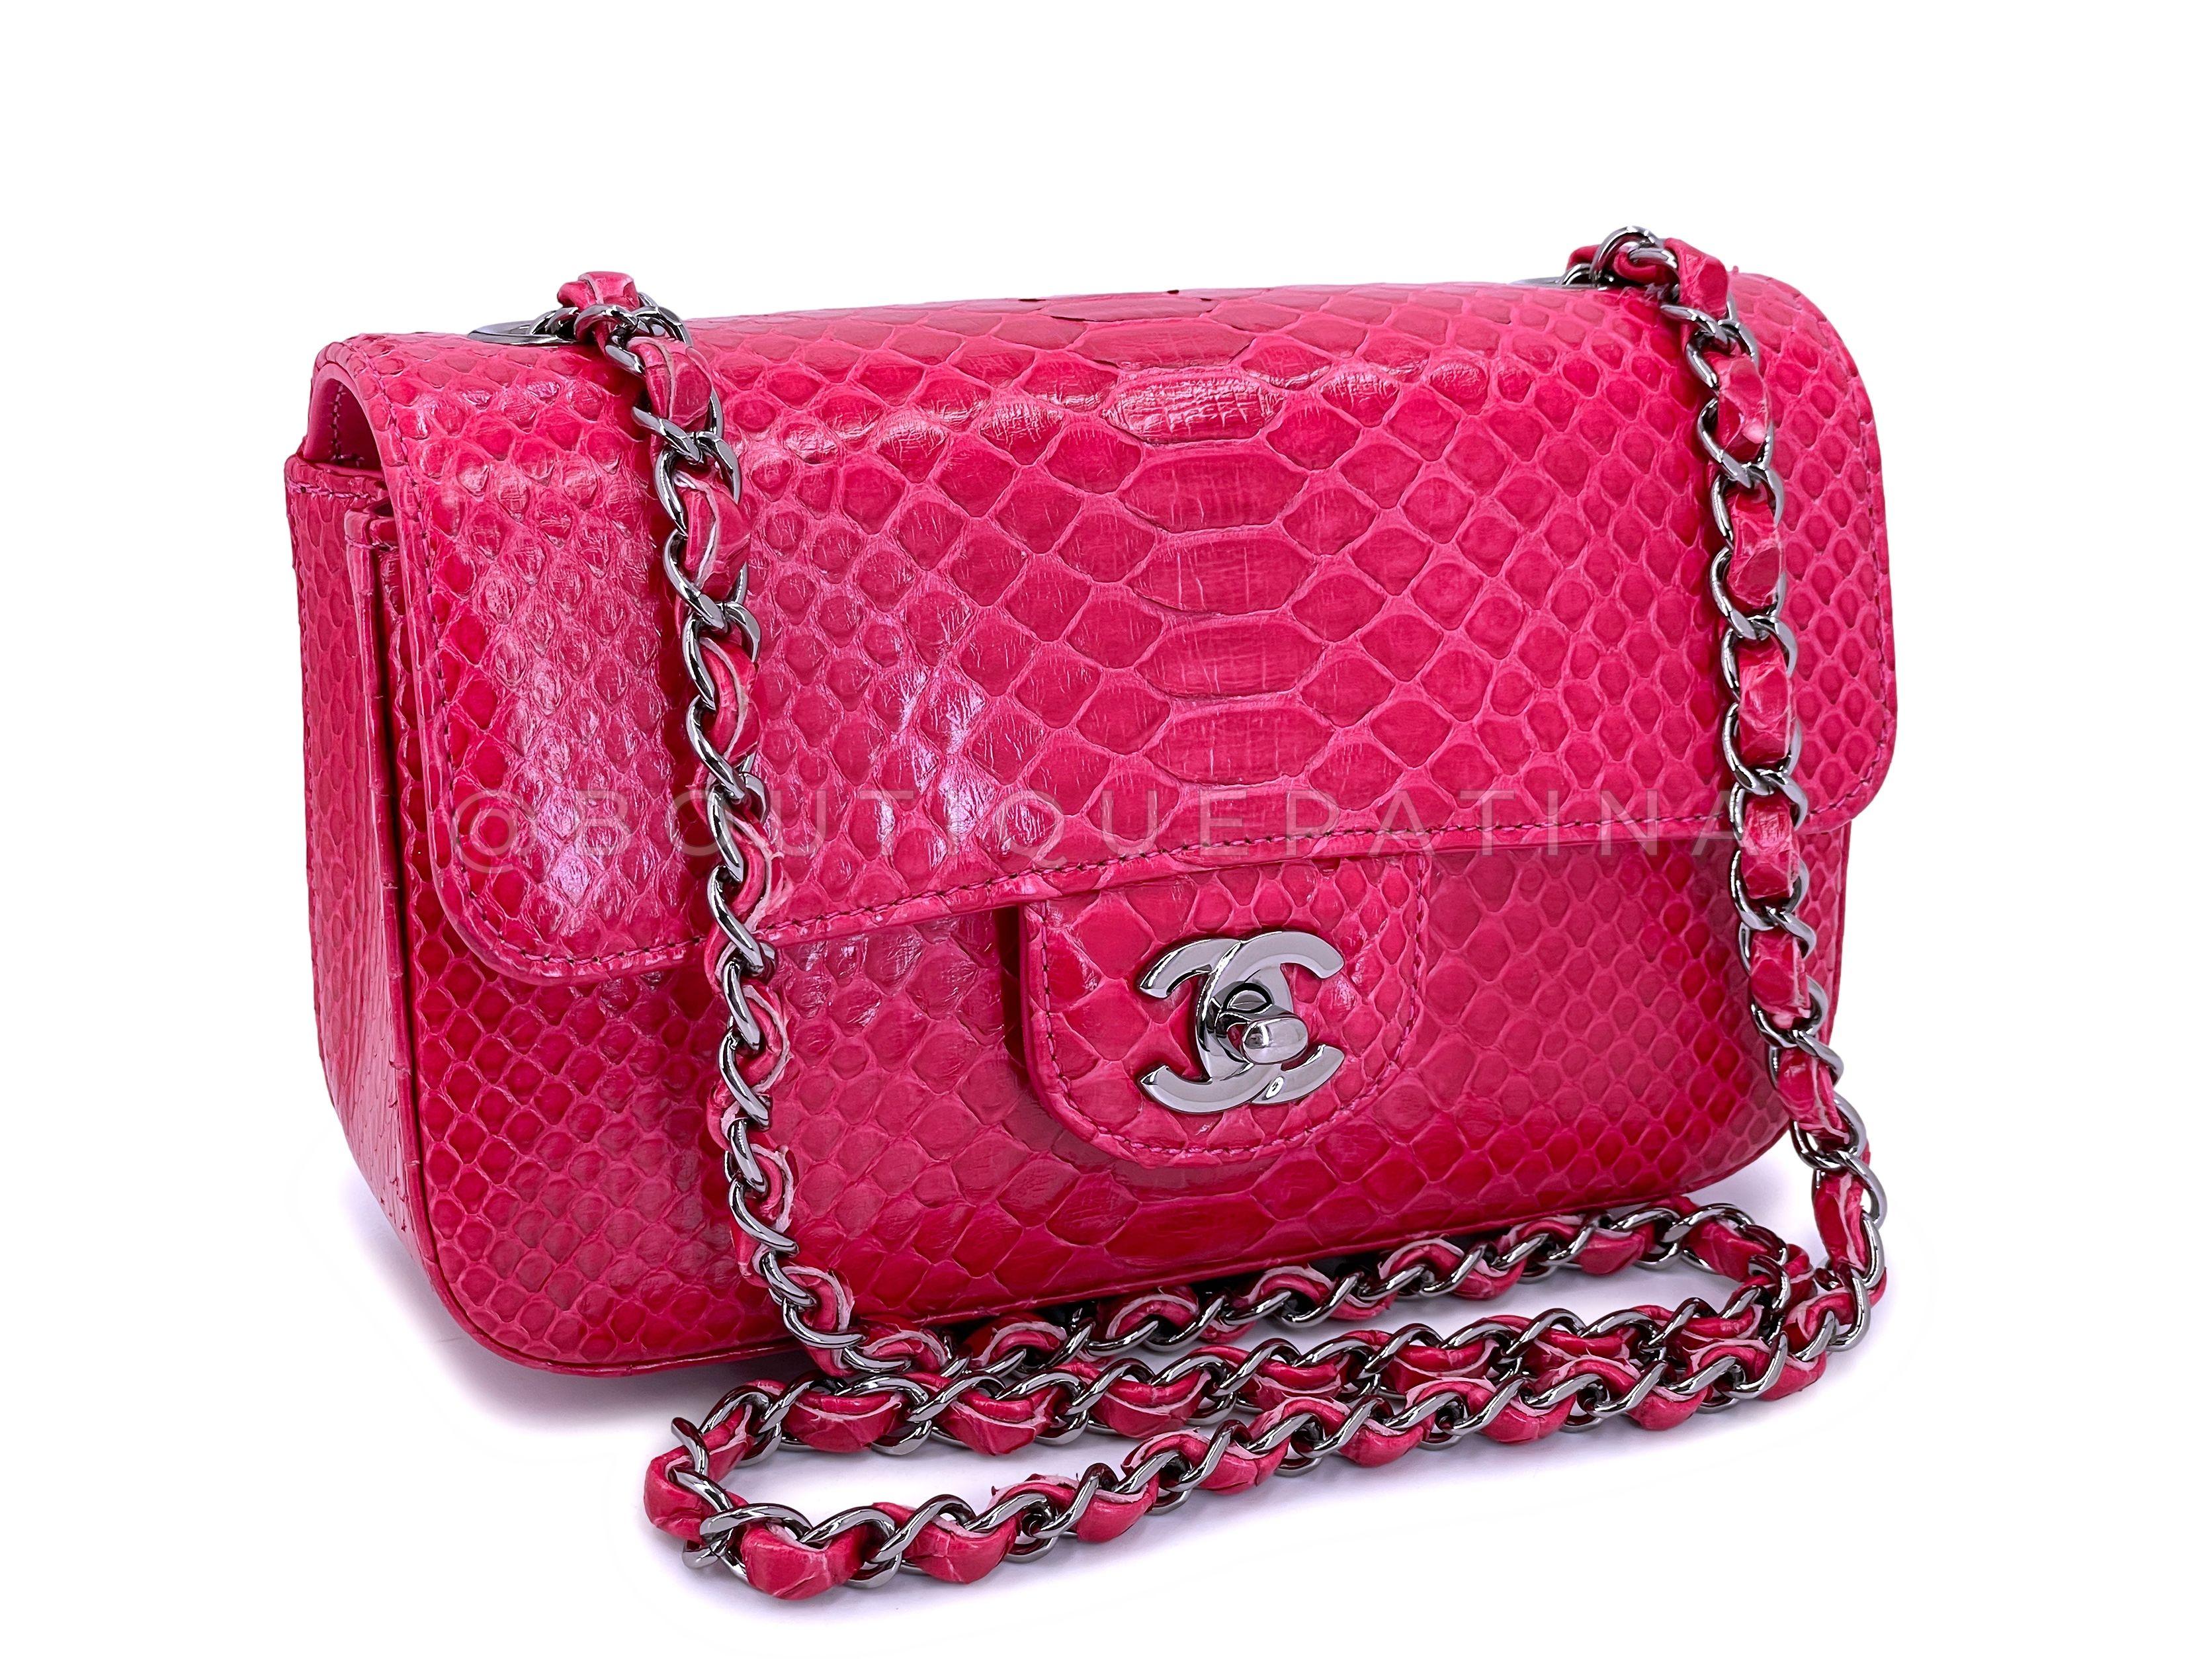 Chanel Mini Python Bag - 5 For Sale on 1stDibs